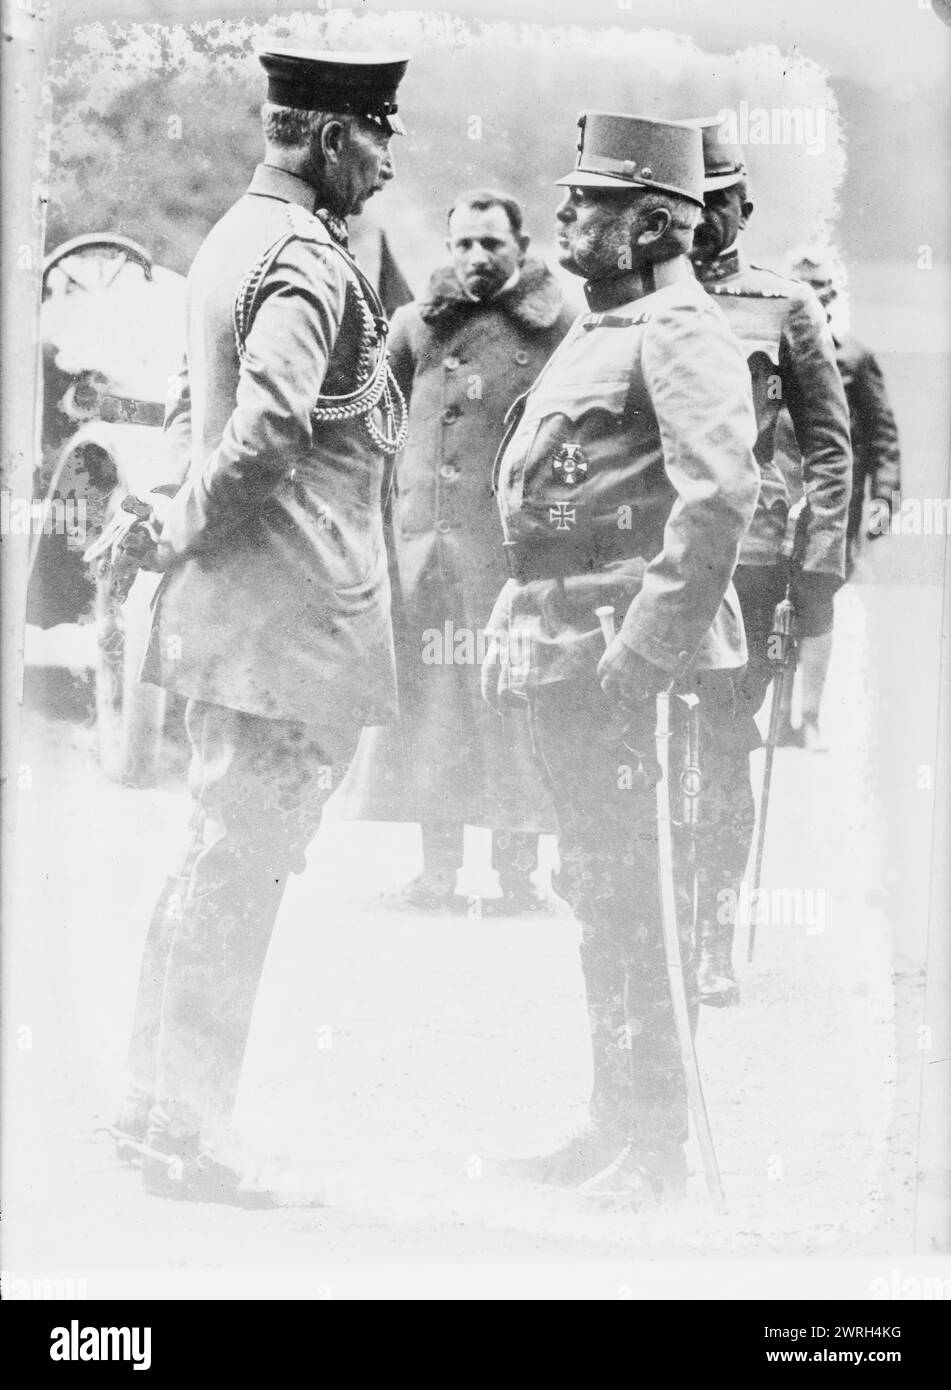 Kaiser &amp; arciduca Friedrich, 26 luglio 1915 (data creata o pubblicata successivamente). Kaiser Guglielmo II di Germania (1859-1941) con l'arciduca Federico, duca di Teschen (1856-1936) Comandante supremo dell'esercito austro-ungarico durante la prima guerra mondiale Foto Stock